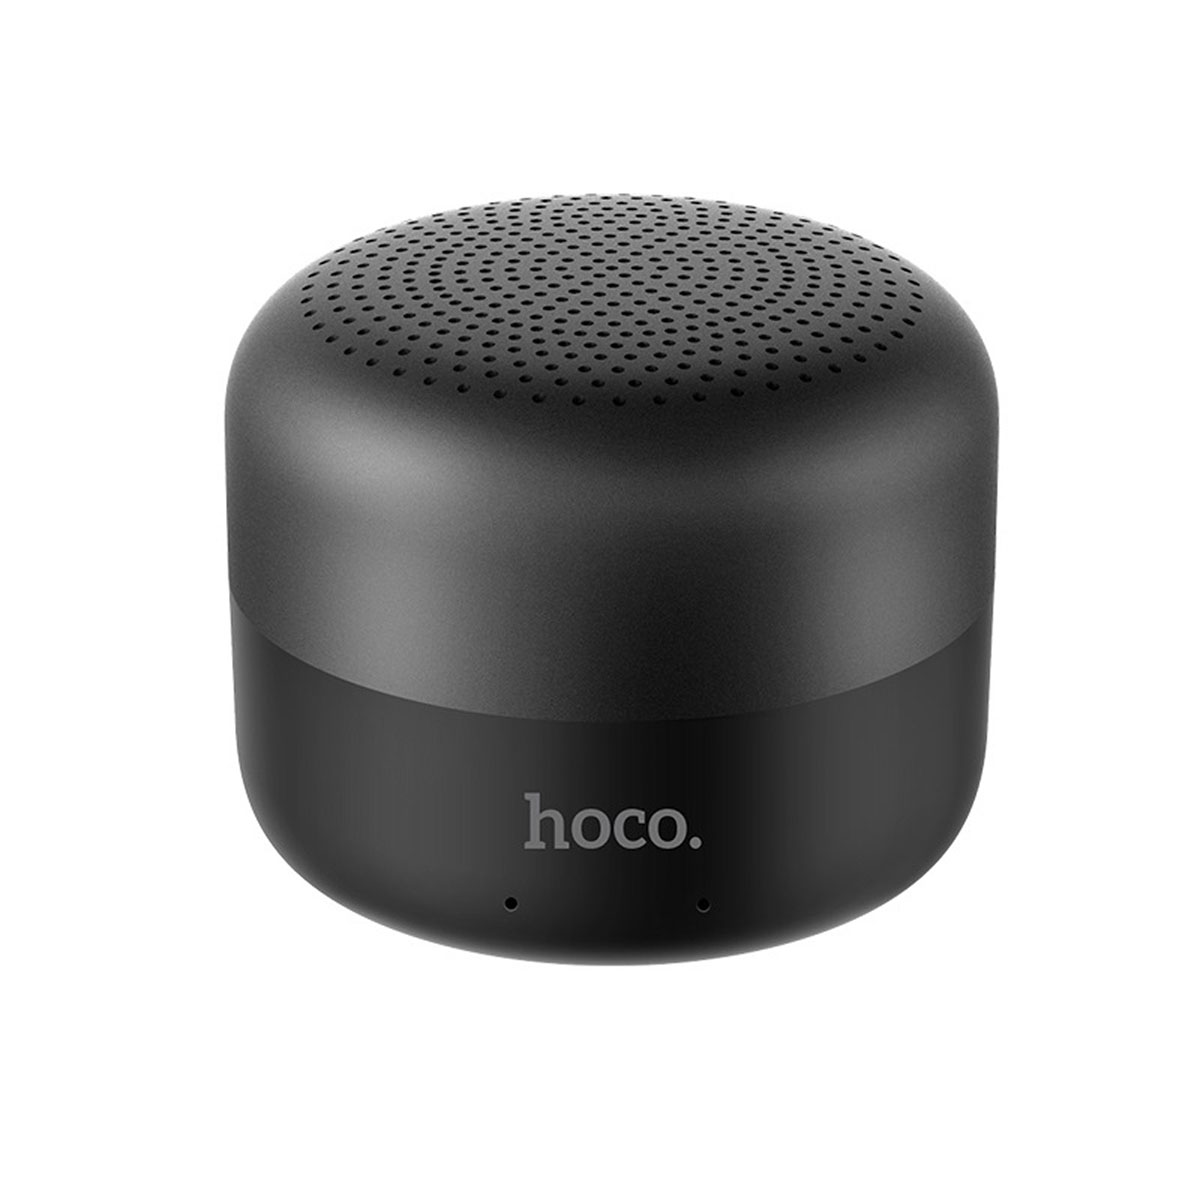 HOCO BS29 Gamble journey Беспроводной динамик (колонка) V5.0 с аккумулятором 600mAh для 5 часов разговоров и музыки поддержка режимов TF и AUX, цвет черный.